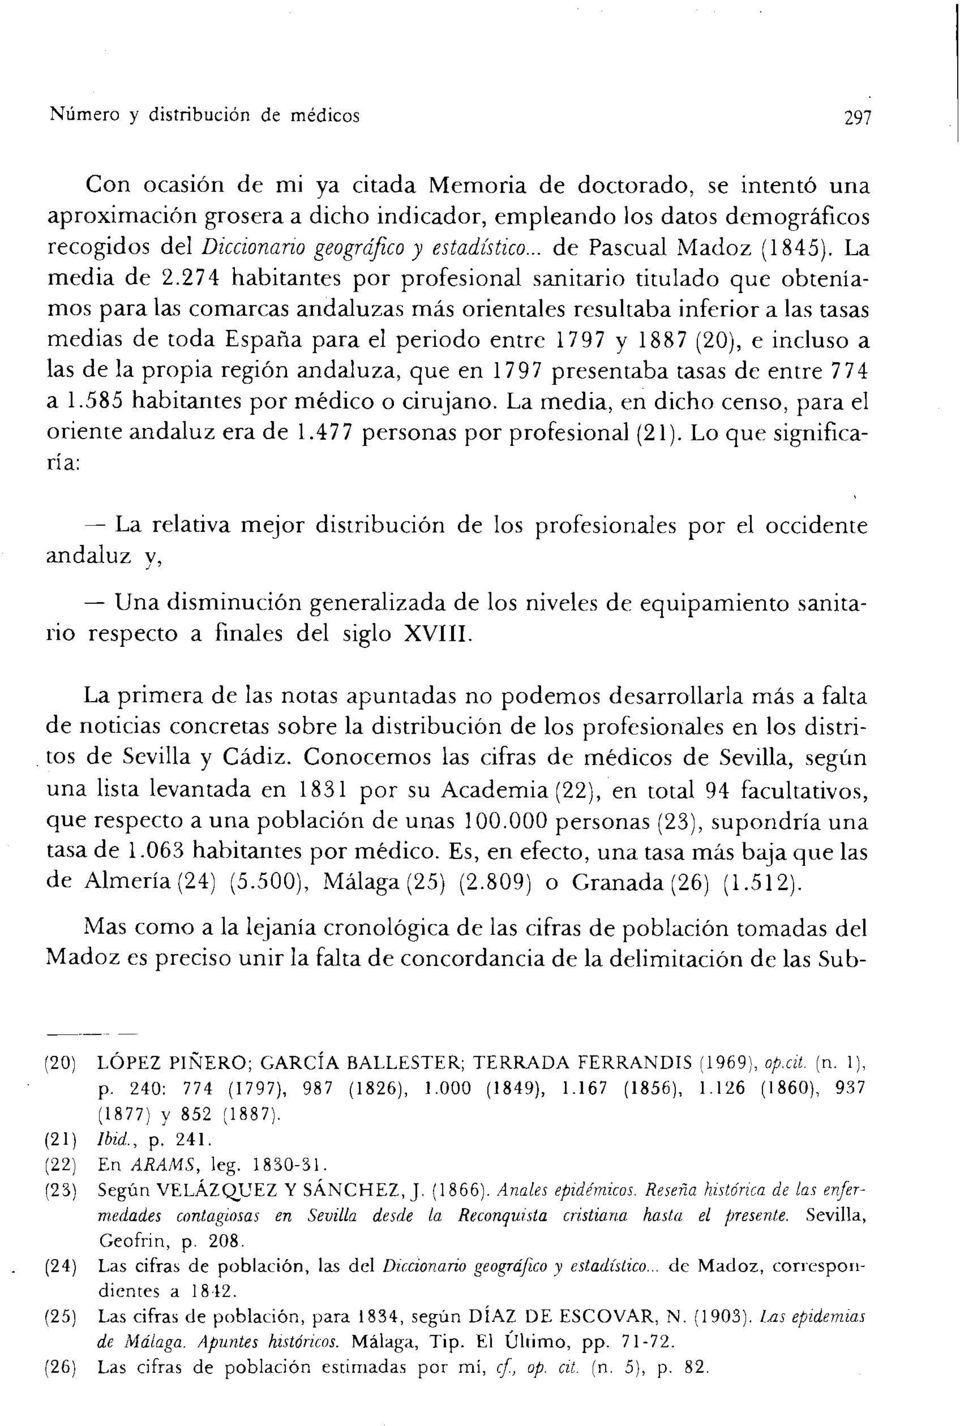 274 habitantes por profesional sanitario titulado que obteníamos para las comarcas andaluzas más orientales resultaba inferior a las tasas medias de toda España para el periodo entre 1797 y 1887